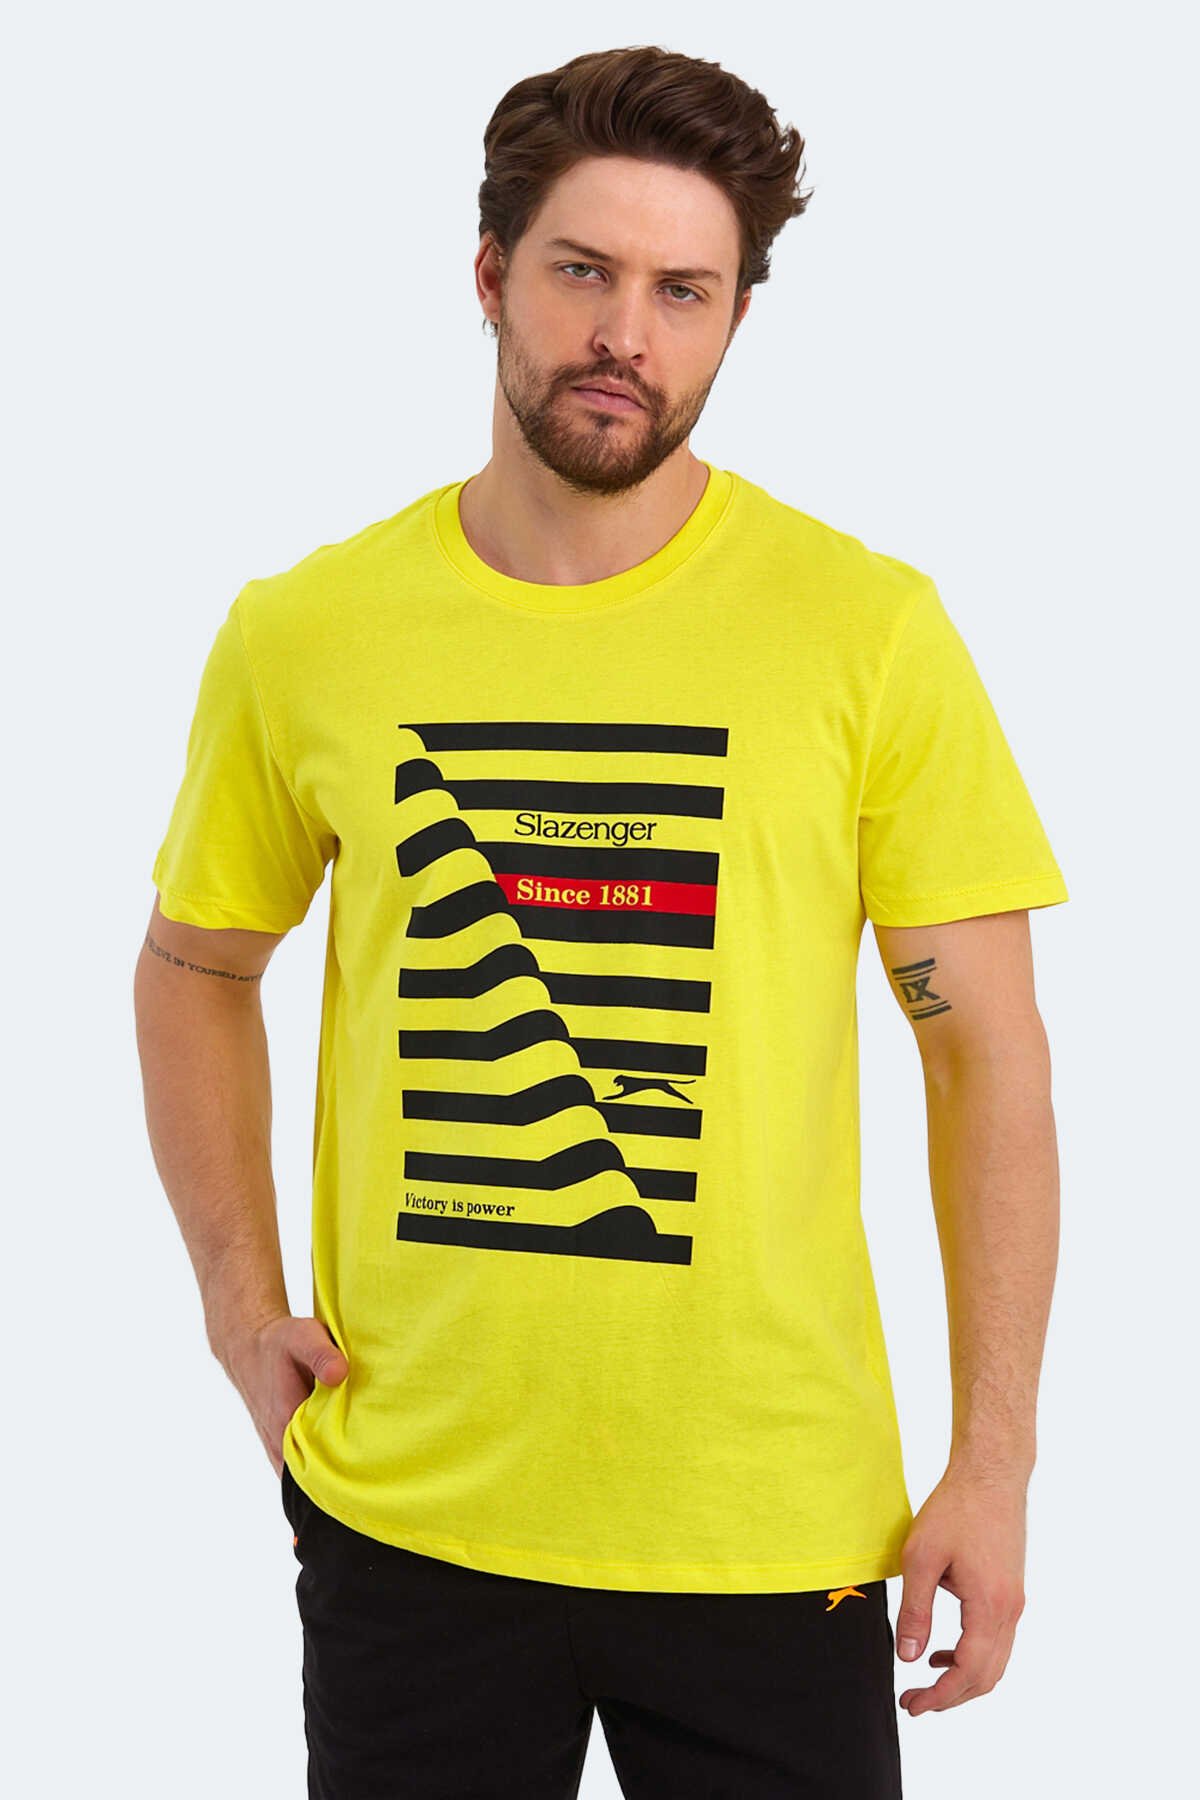 Slazenger - KATELL OVER Erkek Kısa Kollu T-Shirt Açık Sarı